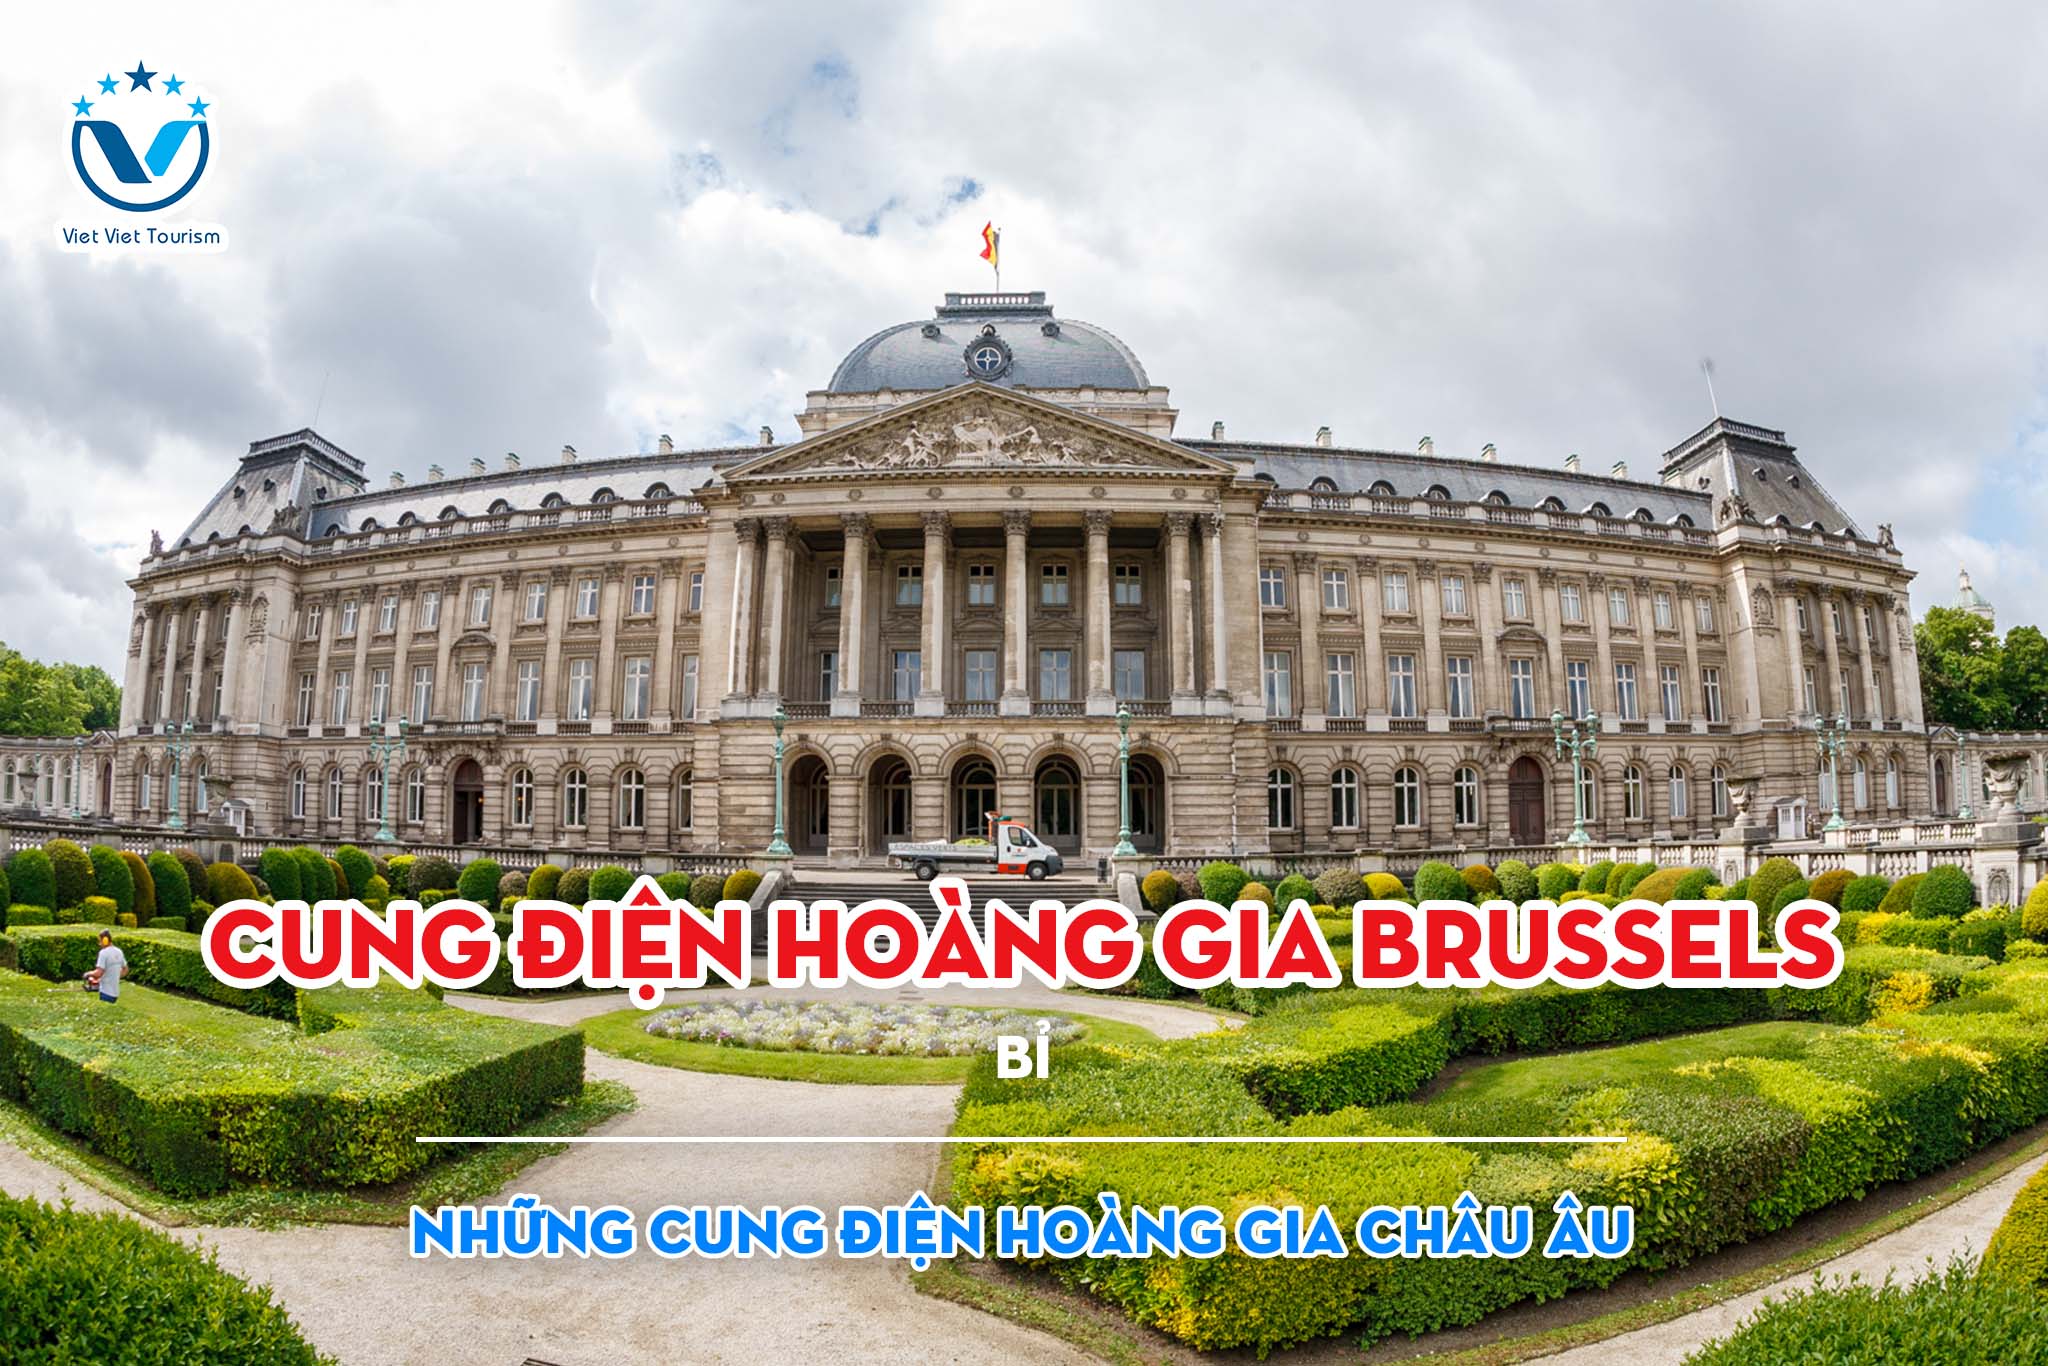 Royal Palace VVT 10. Cung điện Hoàng gia Brussels